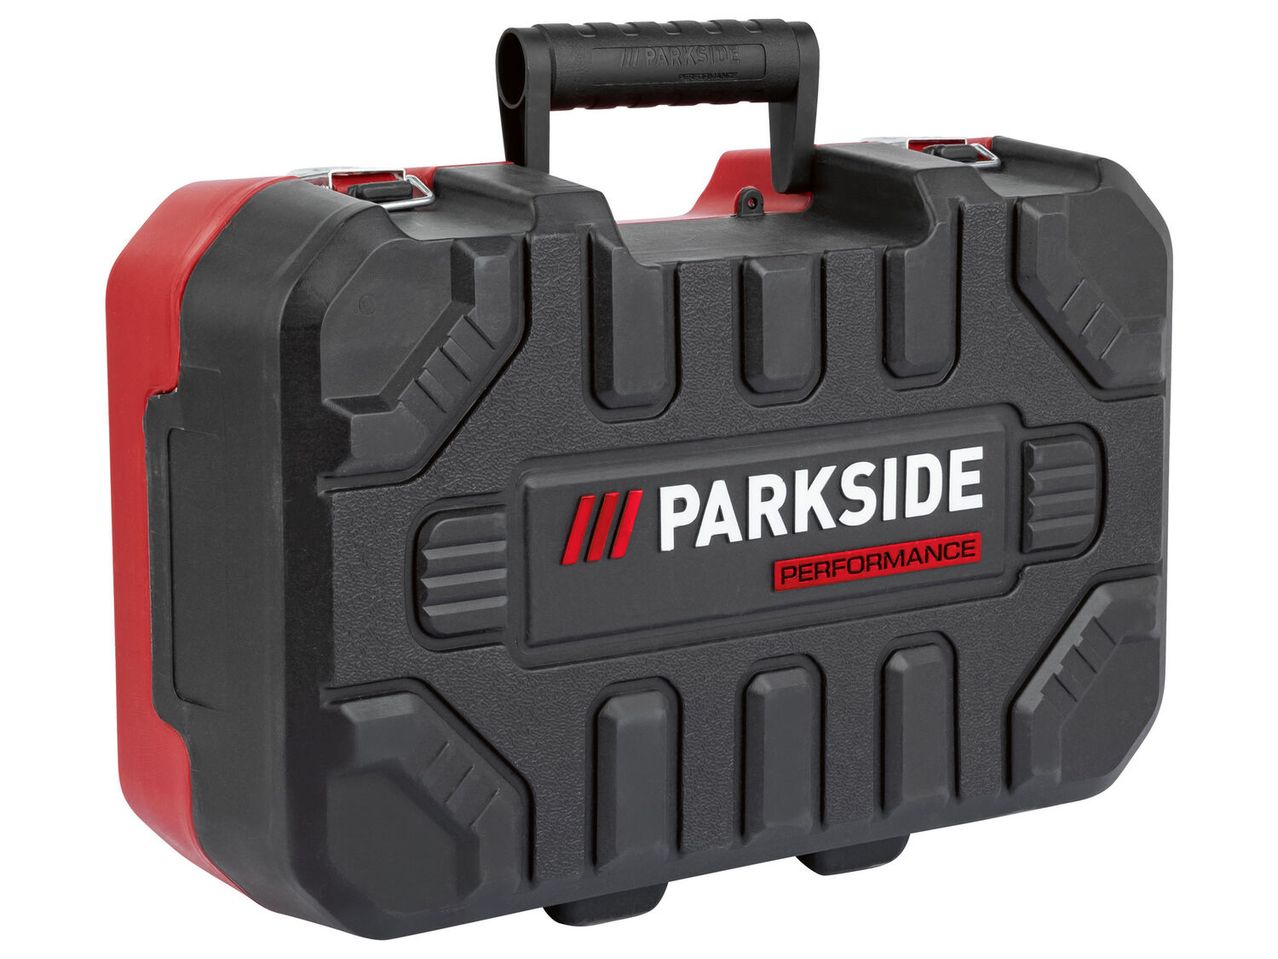 Ver empliada: Parkside Performance® Aparafusadora de Impacto 20 V sem Bateria - Imagem 2